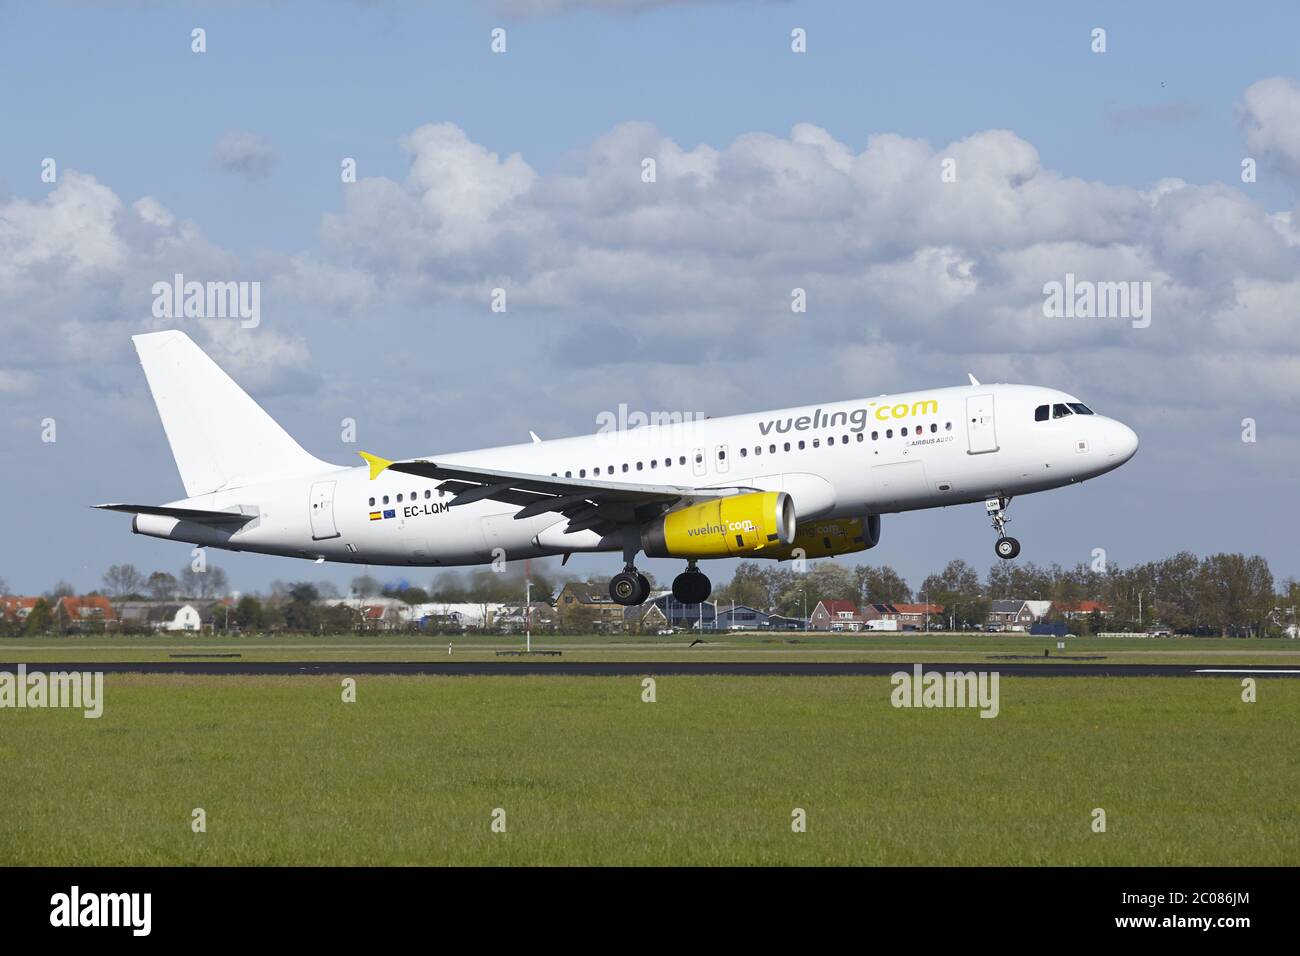 Aeroporto Schiphol di Amsterdam - Airbus A320 da Vueling Land Foto Stock